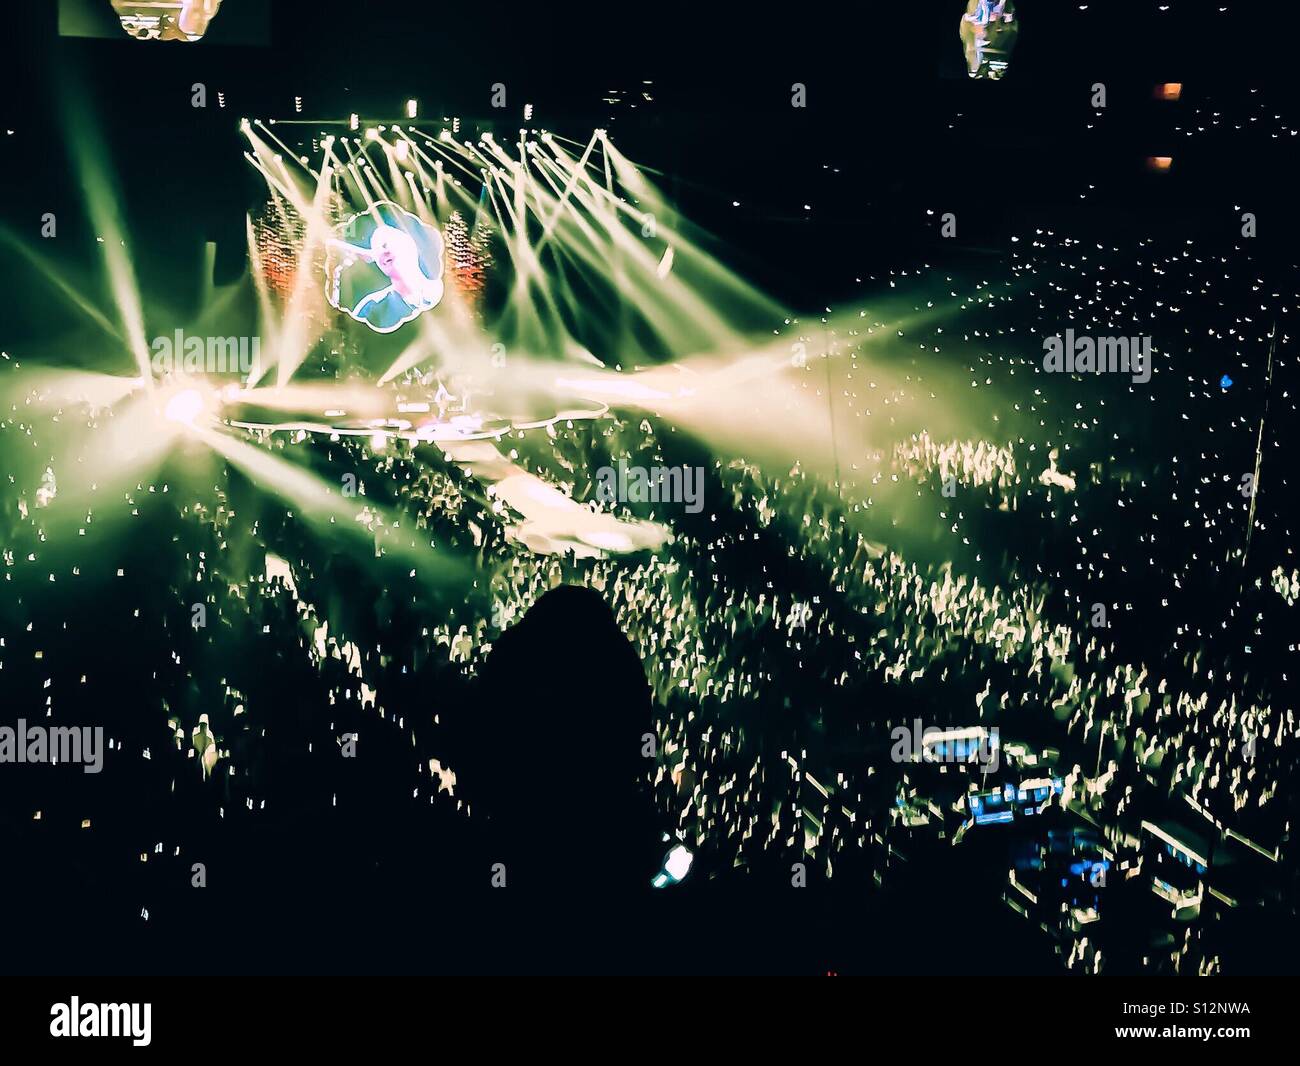 Coldplay concert immagini e fotografie stock ad alta risoluzione - Alamy